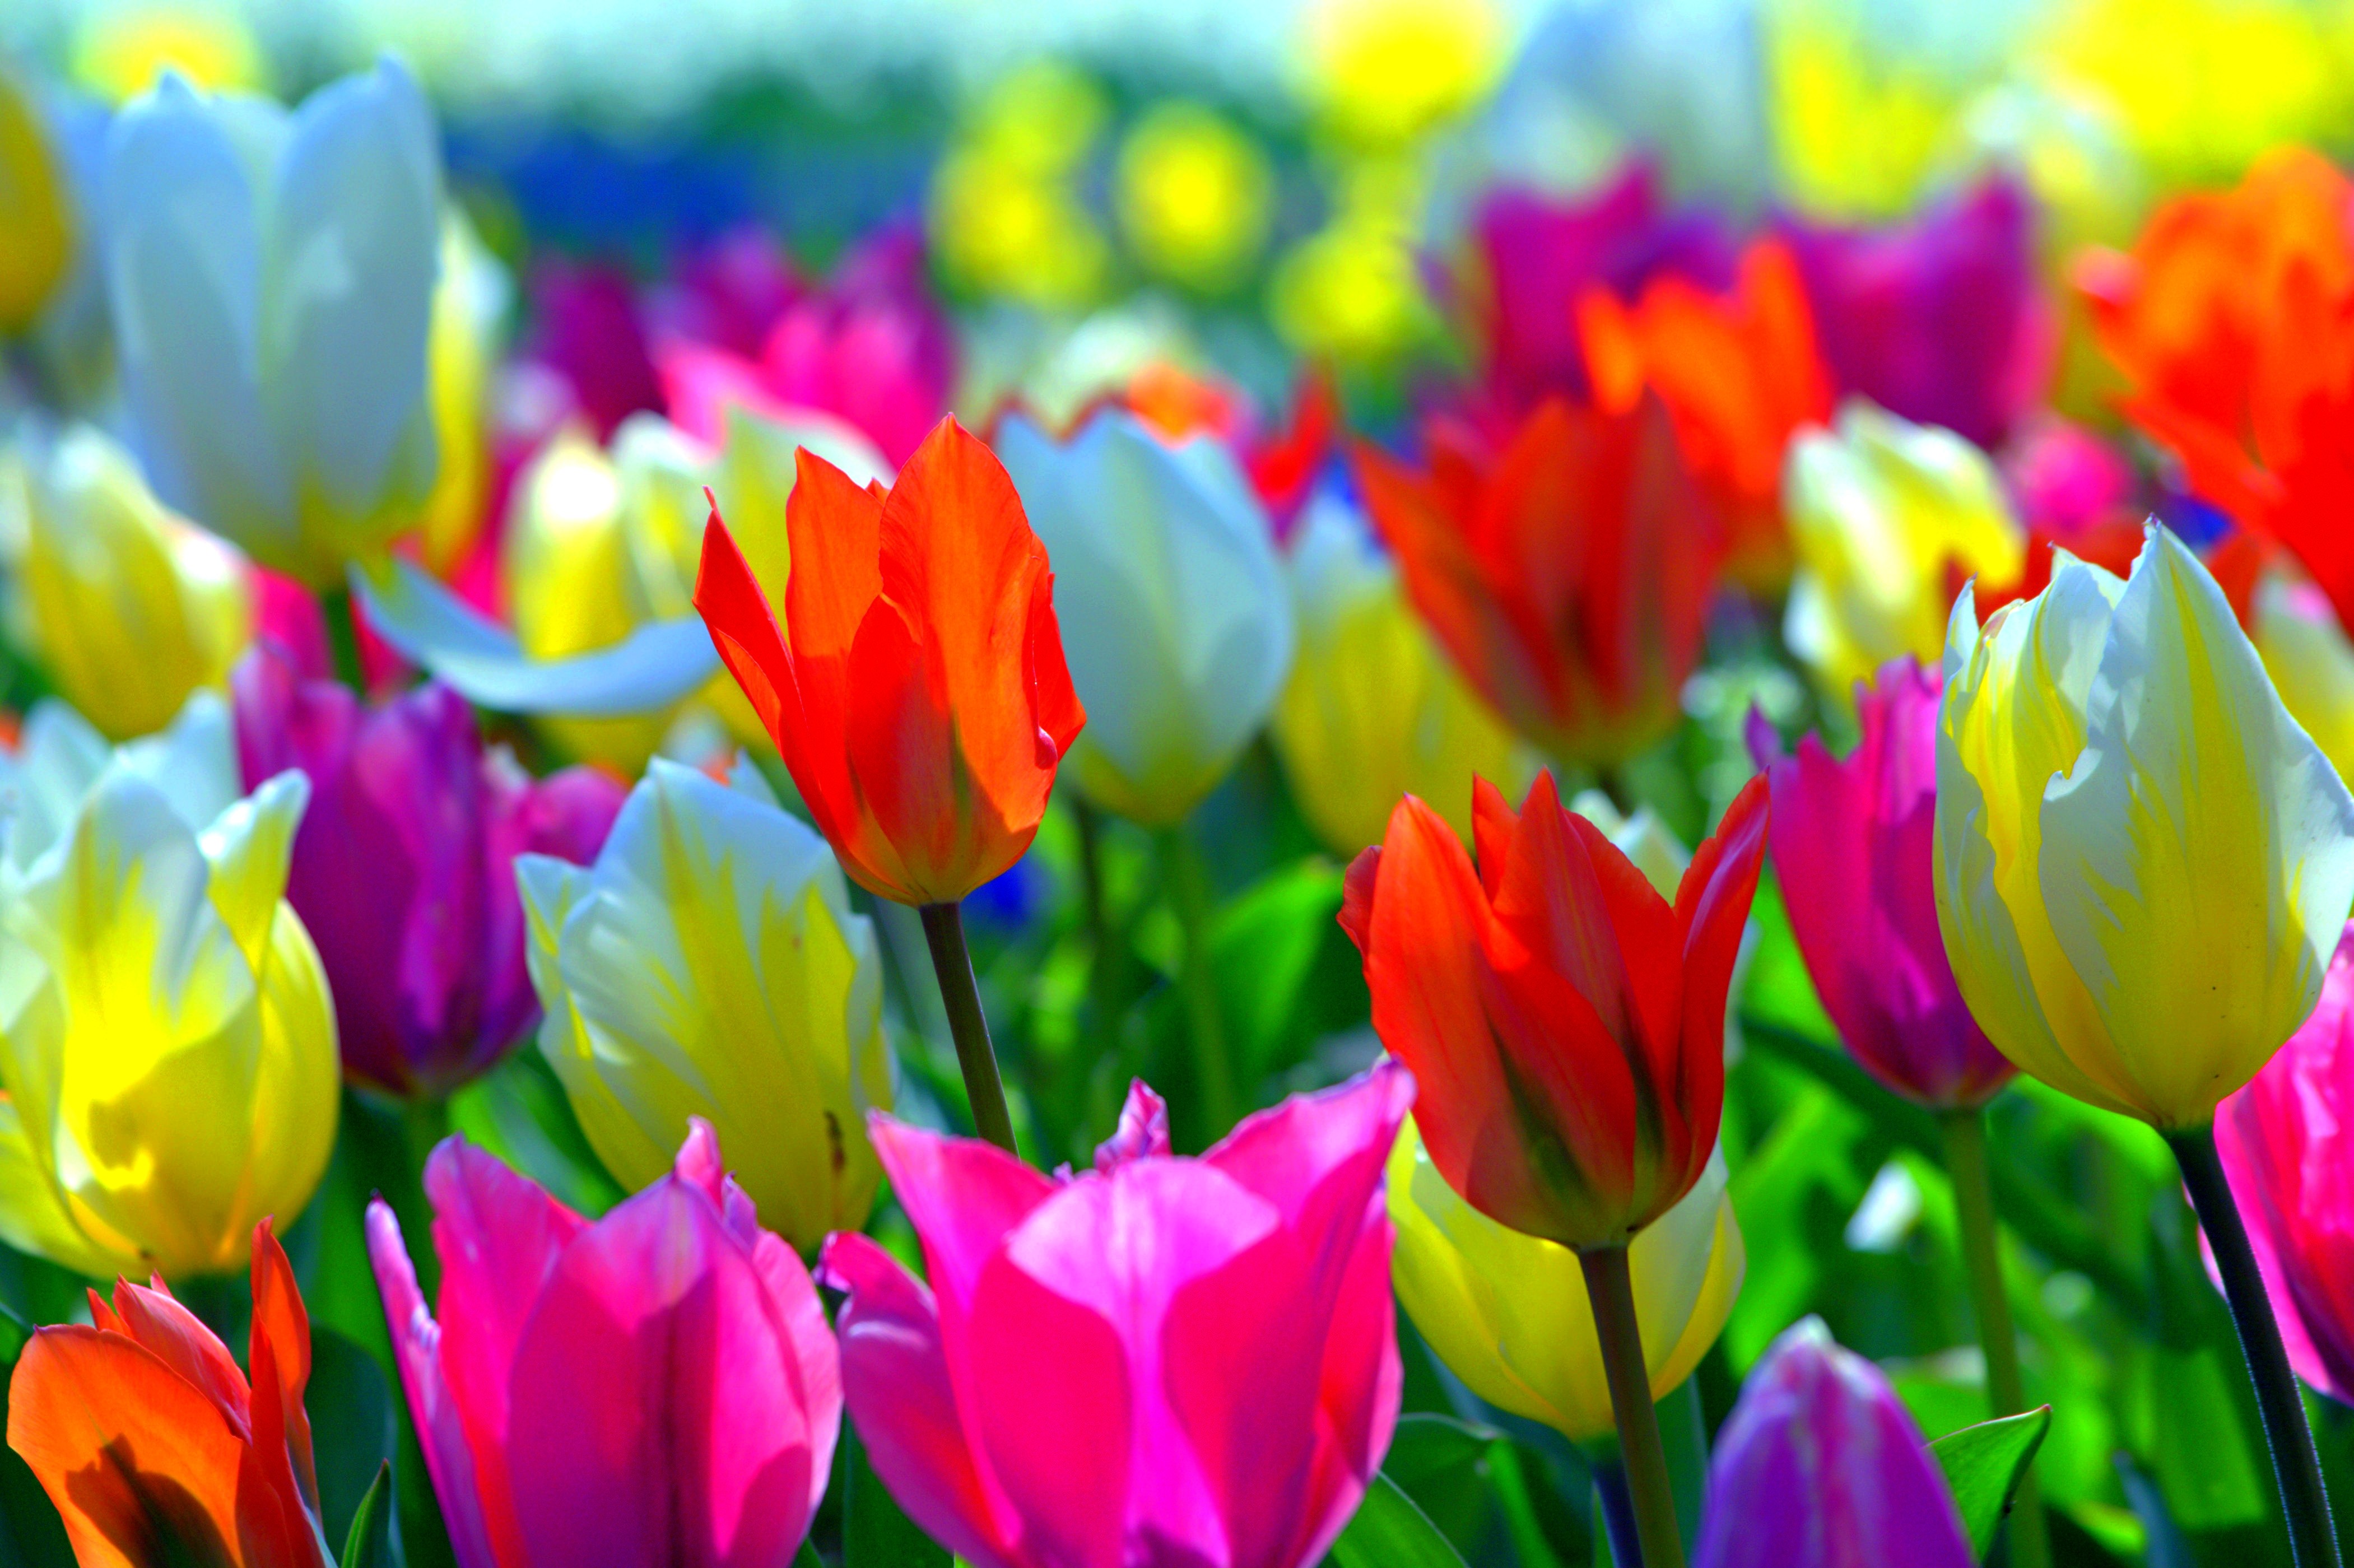 Обои на телефон красивые тюльпаны. Разноцветные цветы. Тюльпаны разноцветные. Яркие тюльпаны. Весенние тюльпаны.